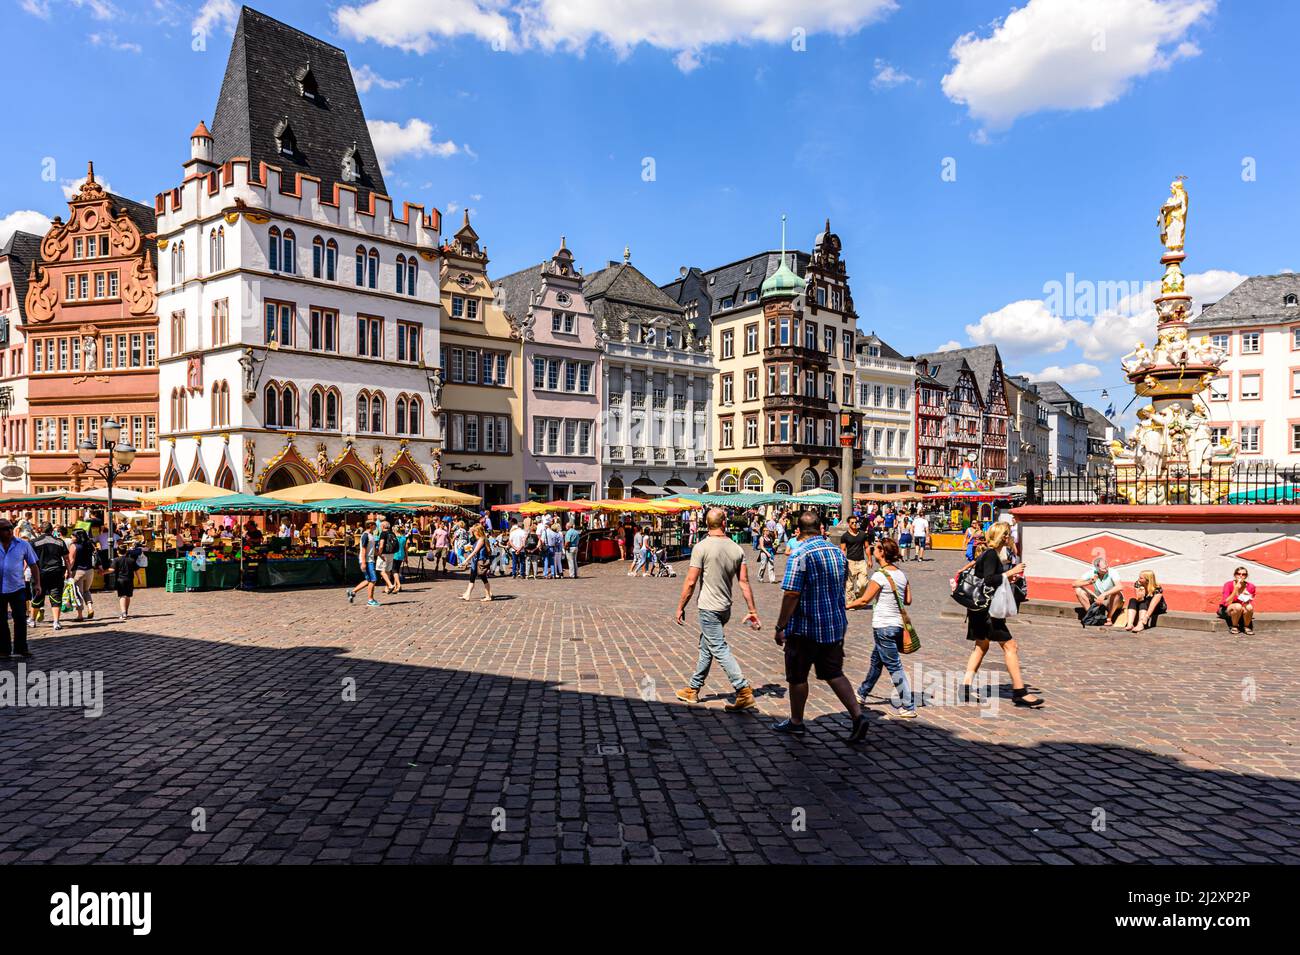 Trier, Alemania, 01 de agosto de 2015: Algunas personas frente a las casas tradicionales en el mercado de la ciudad vieja Foto de stock